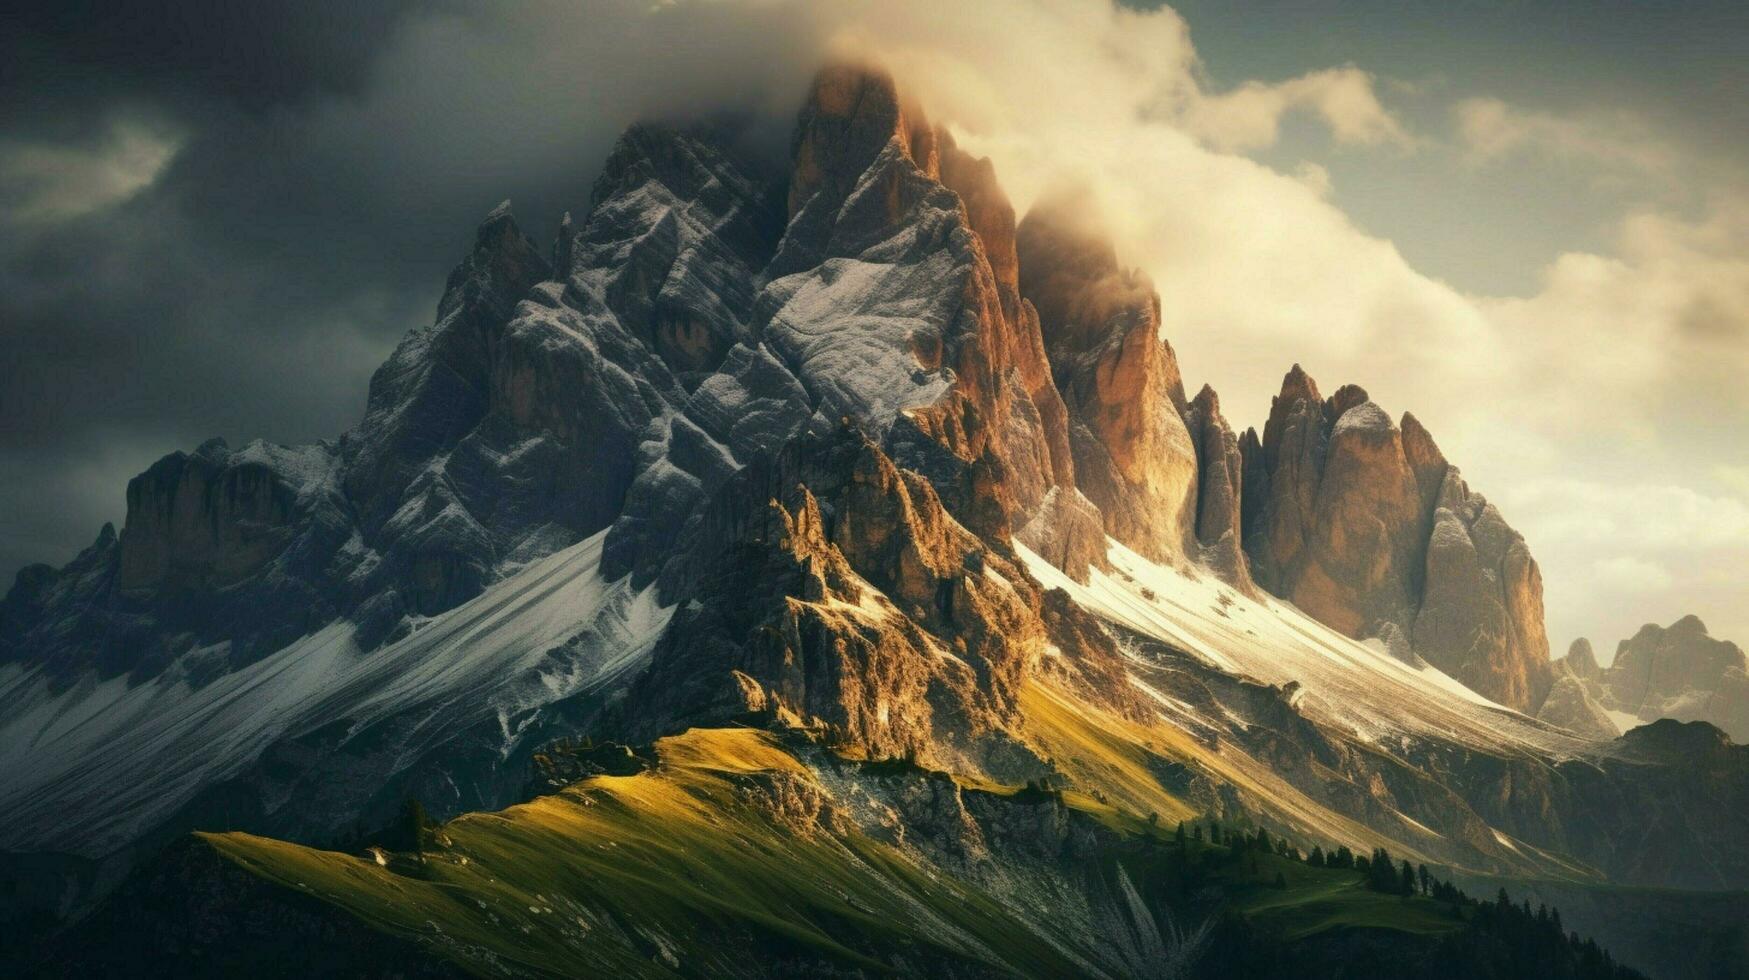 dolomieten gedekt bergen van Italië groep di se foto